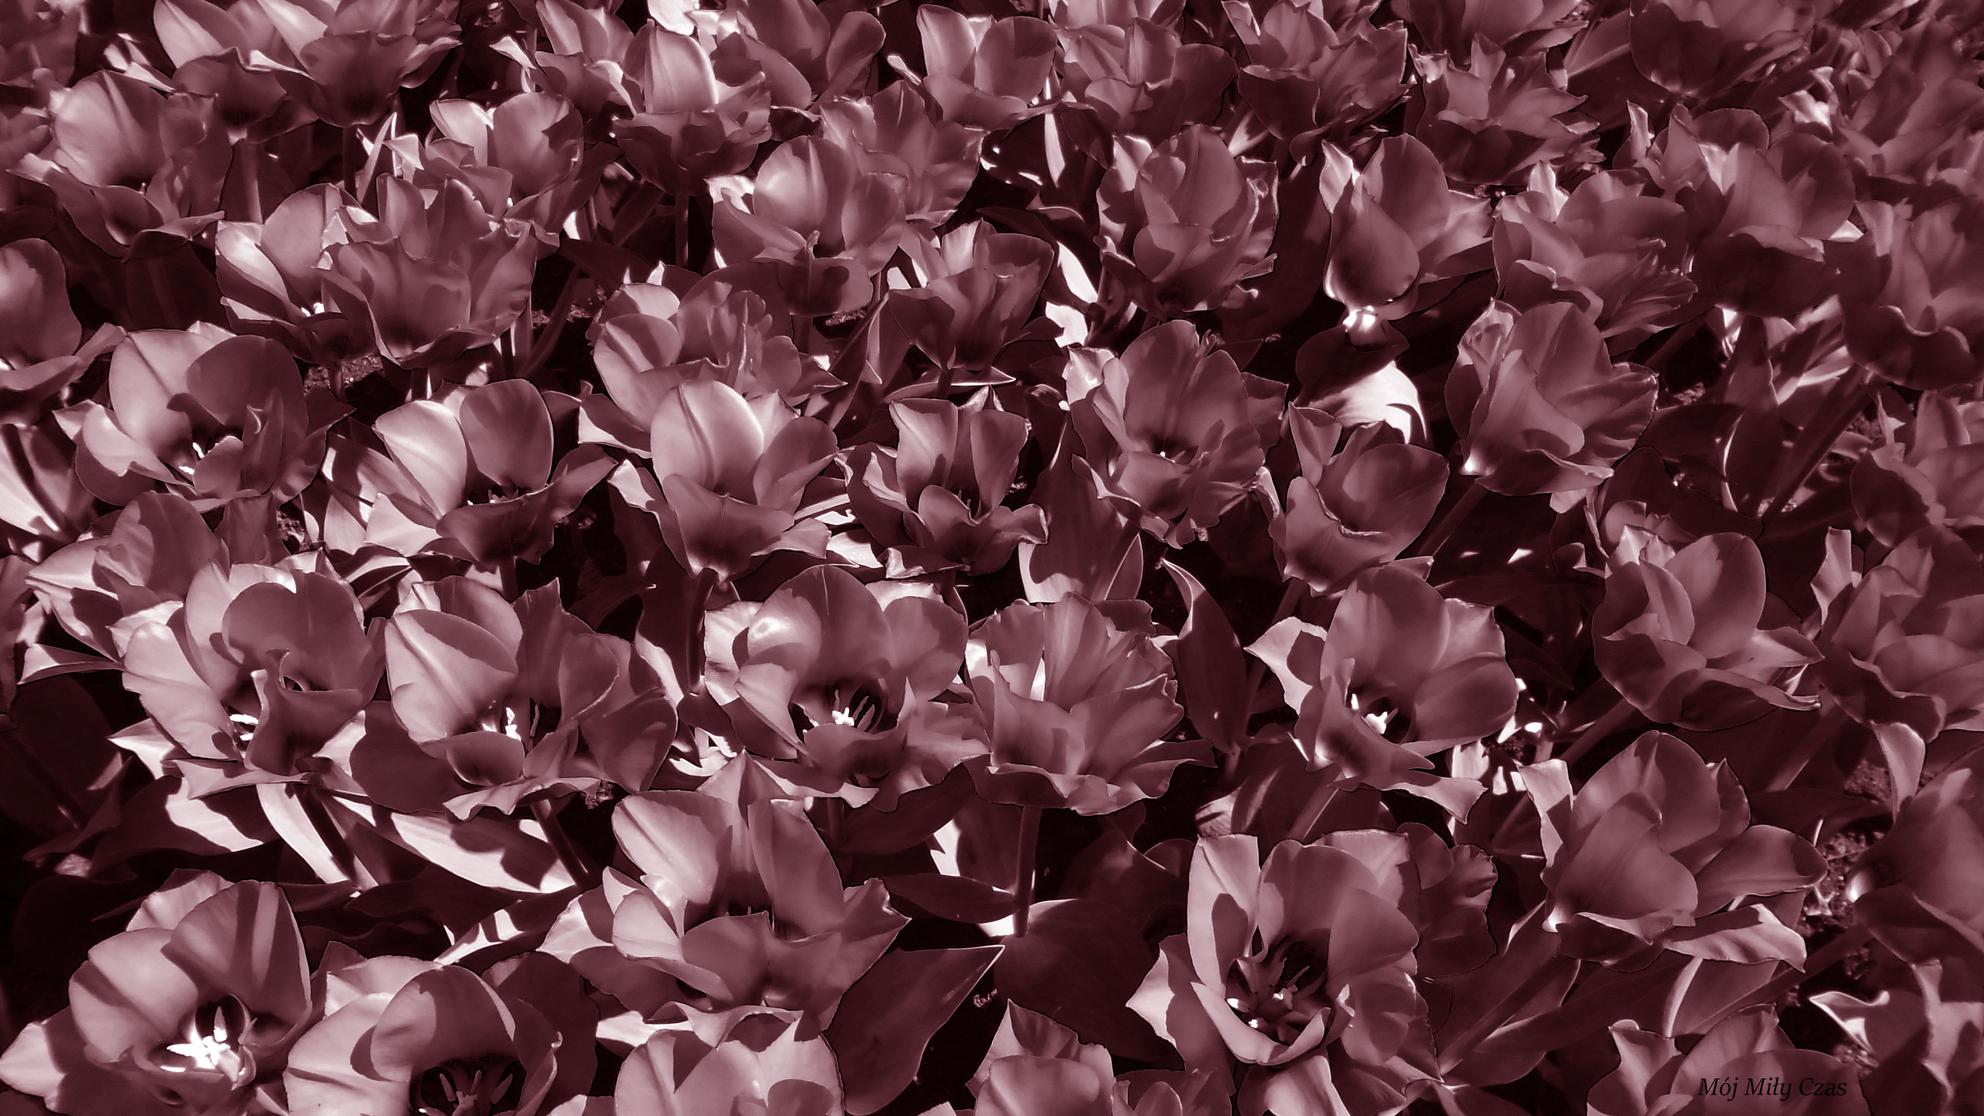 Czarno białę zdjęcie tulipanów